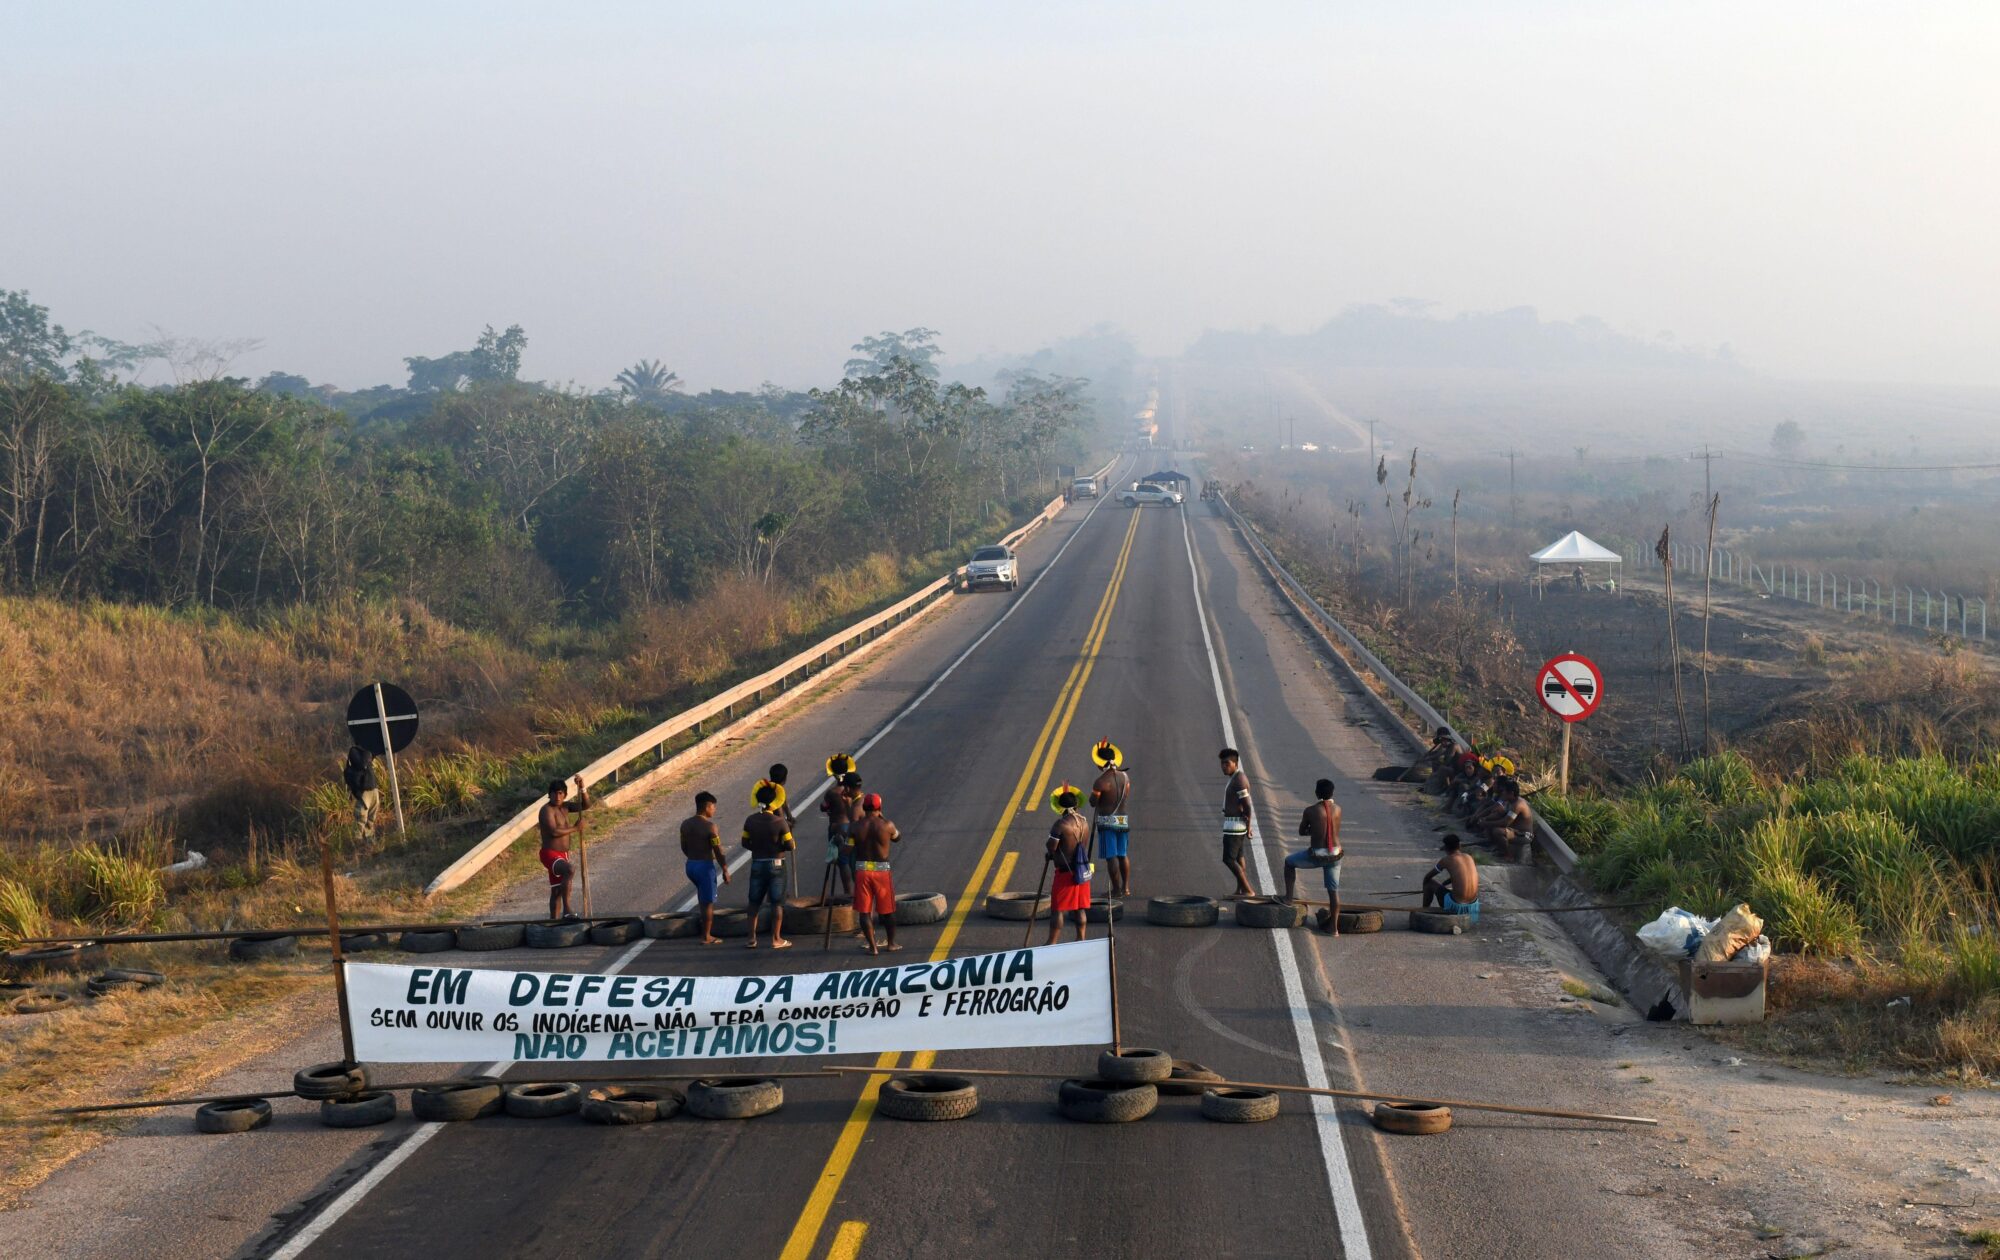 <p>Projetos de infraestrutura levantam controvérsias. Grupo bloqueou a rodovia BR 163, no Pará, em agosto de 2020: “Em defesa da Amazônia. Sem ouvir os indígenas, não haverá concessão e Ferrogrão”, diz faixa (Alamy)</p>